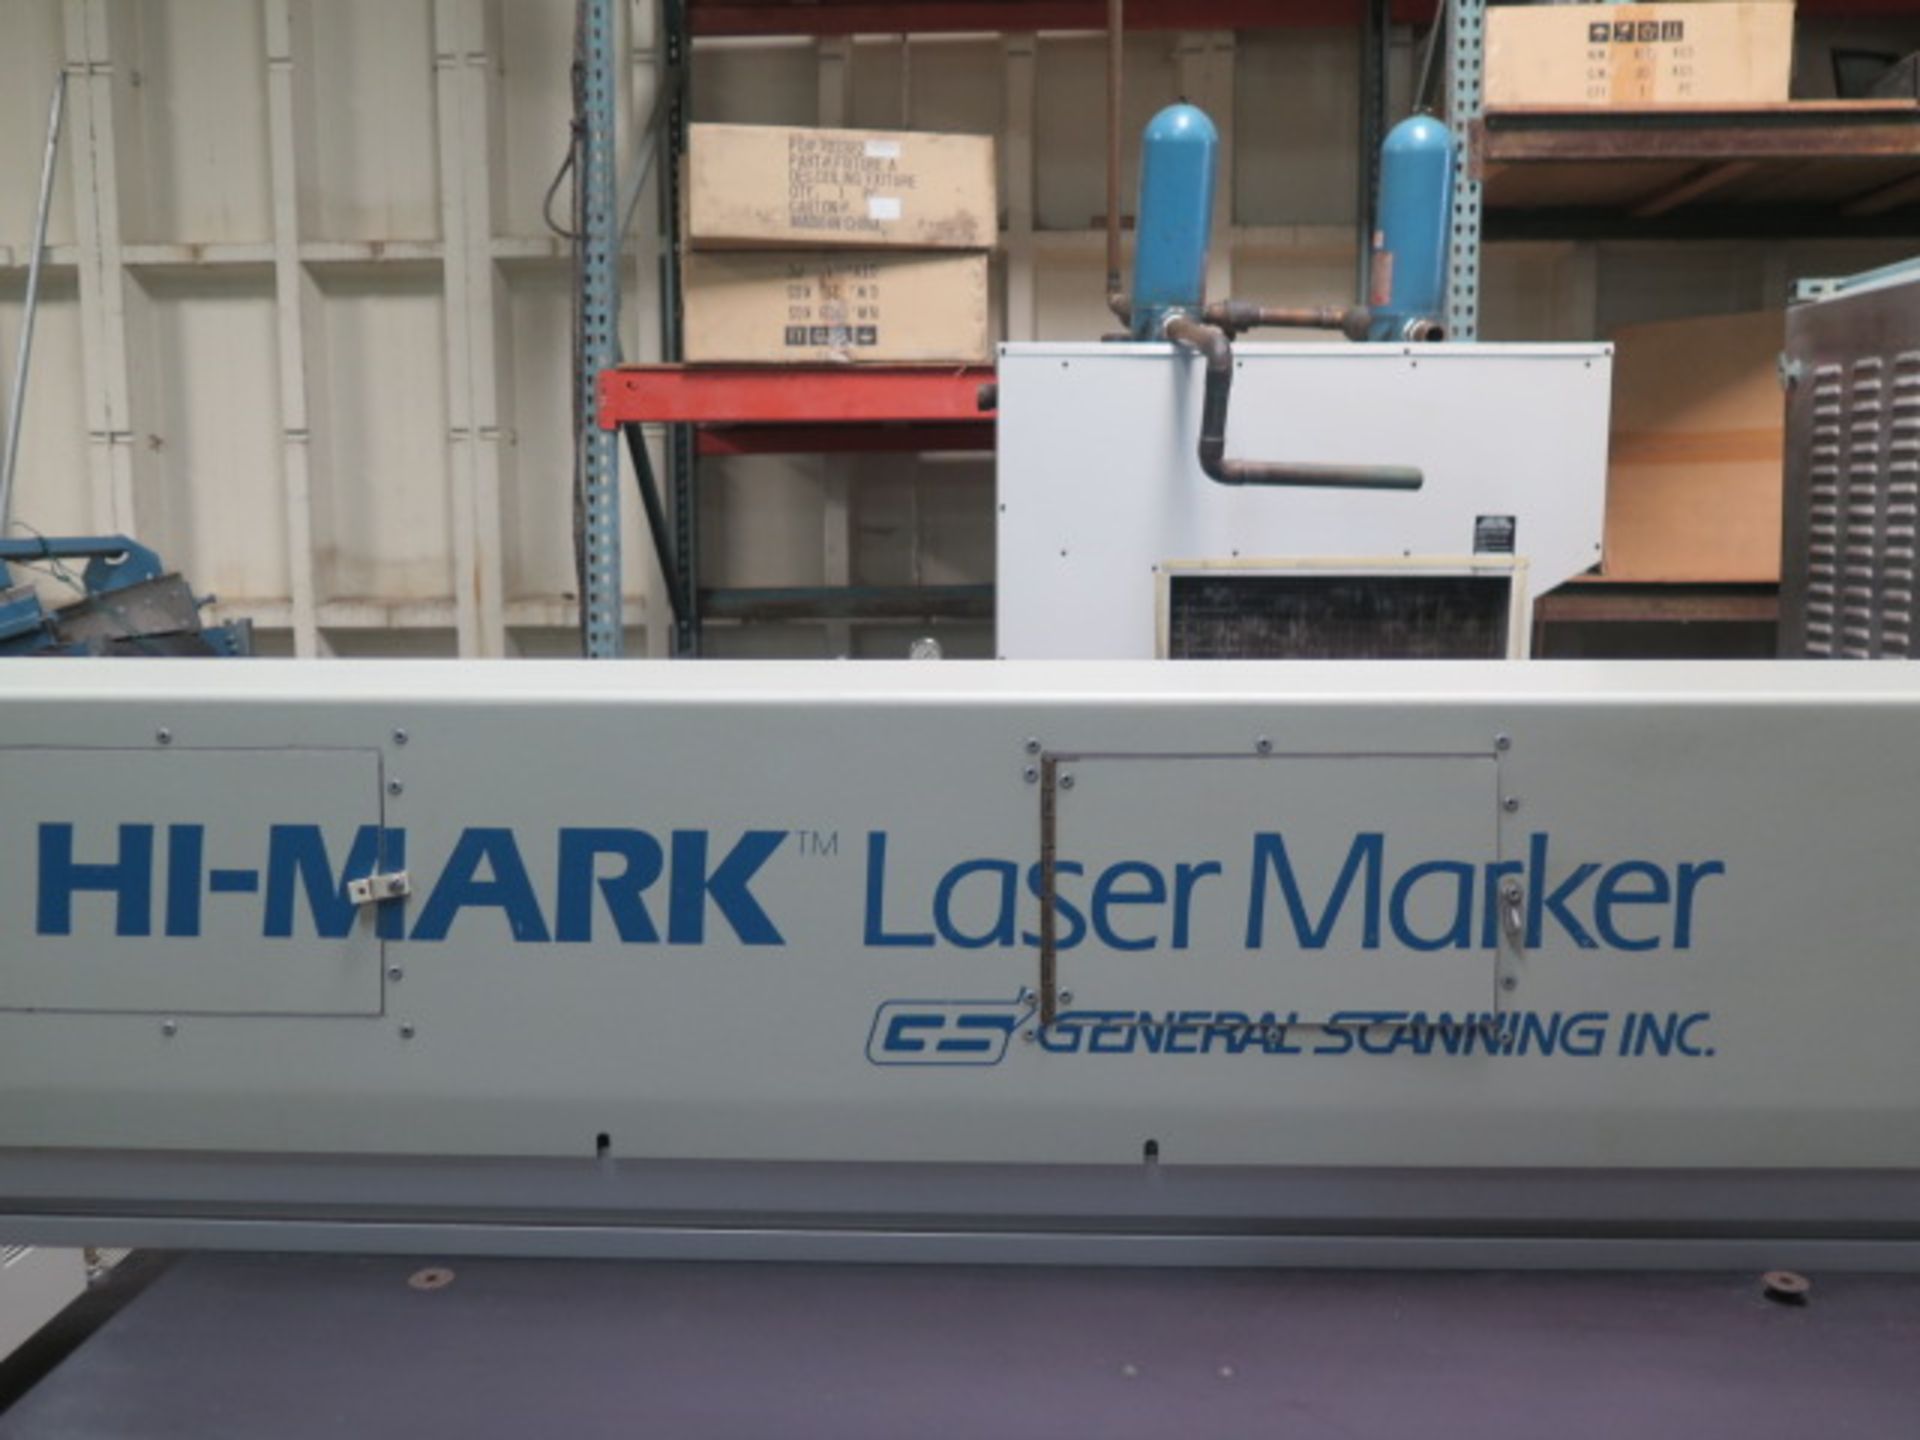 General Scanning Inc. “Hi-Mark” mdl. HM400 Laser Engraving System s/n 94490212 SOLD AS-IS - Image 10 of 11